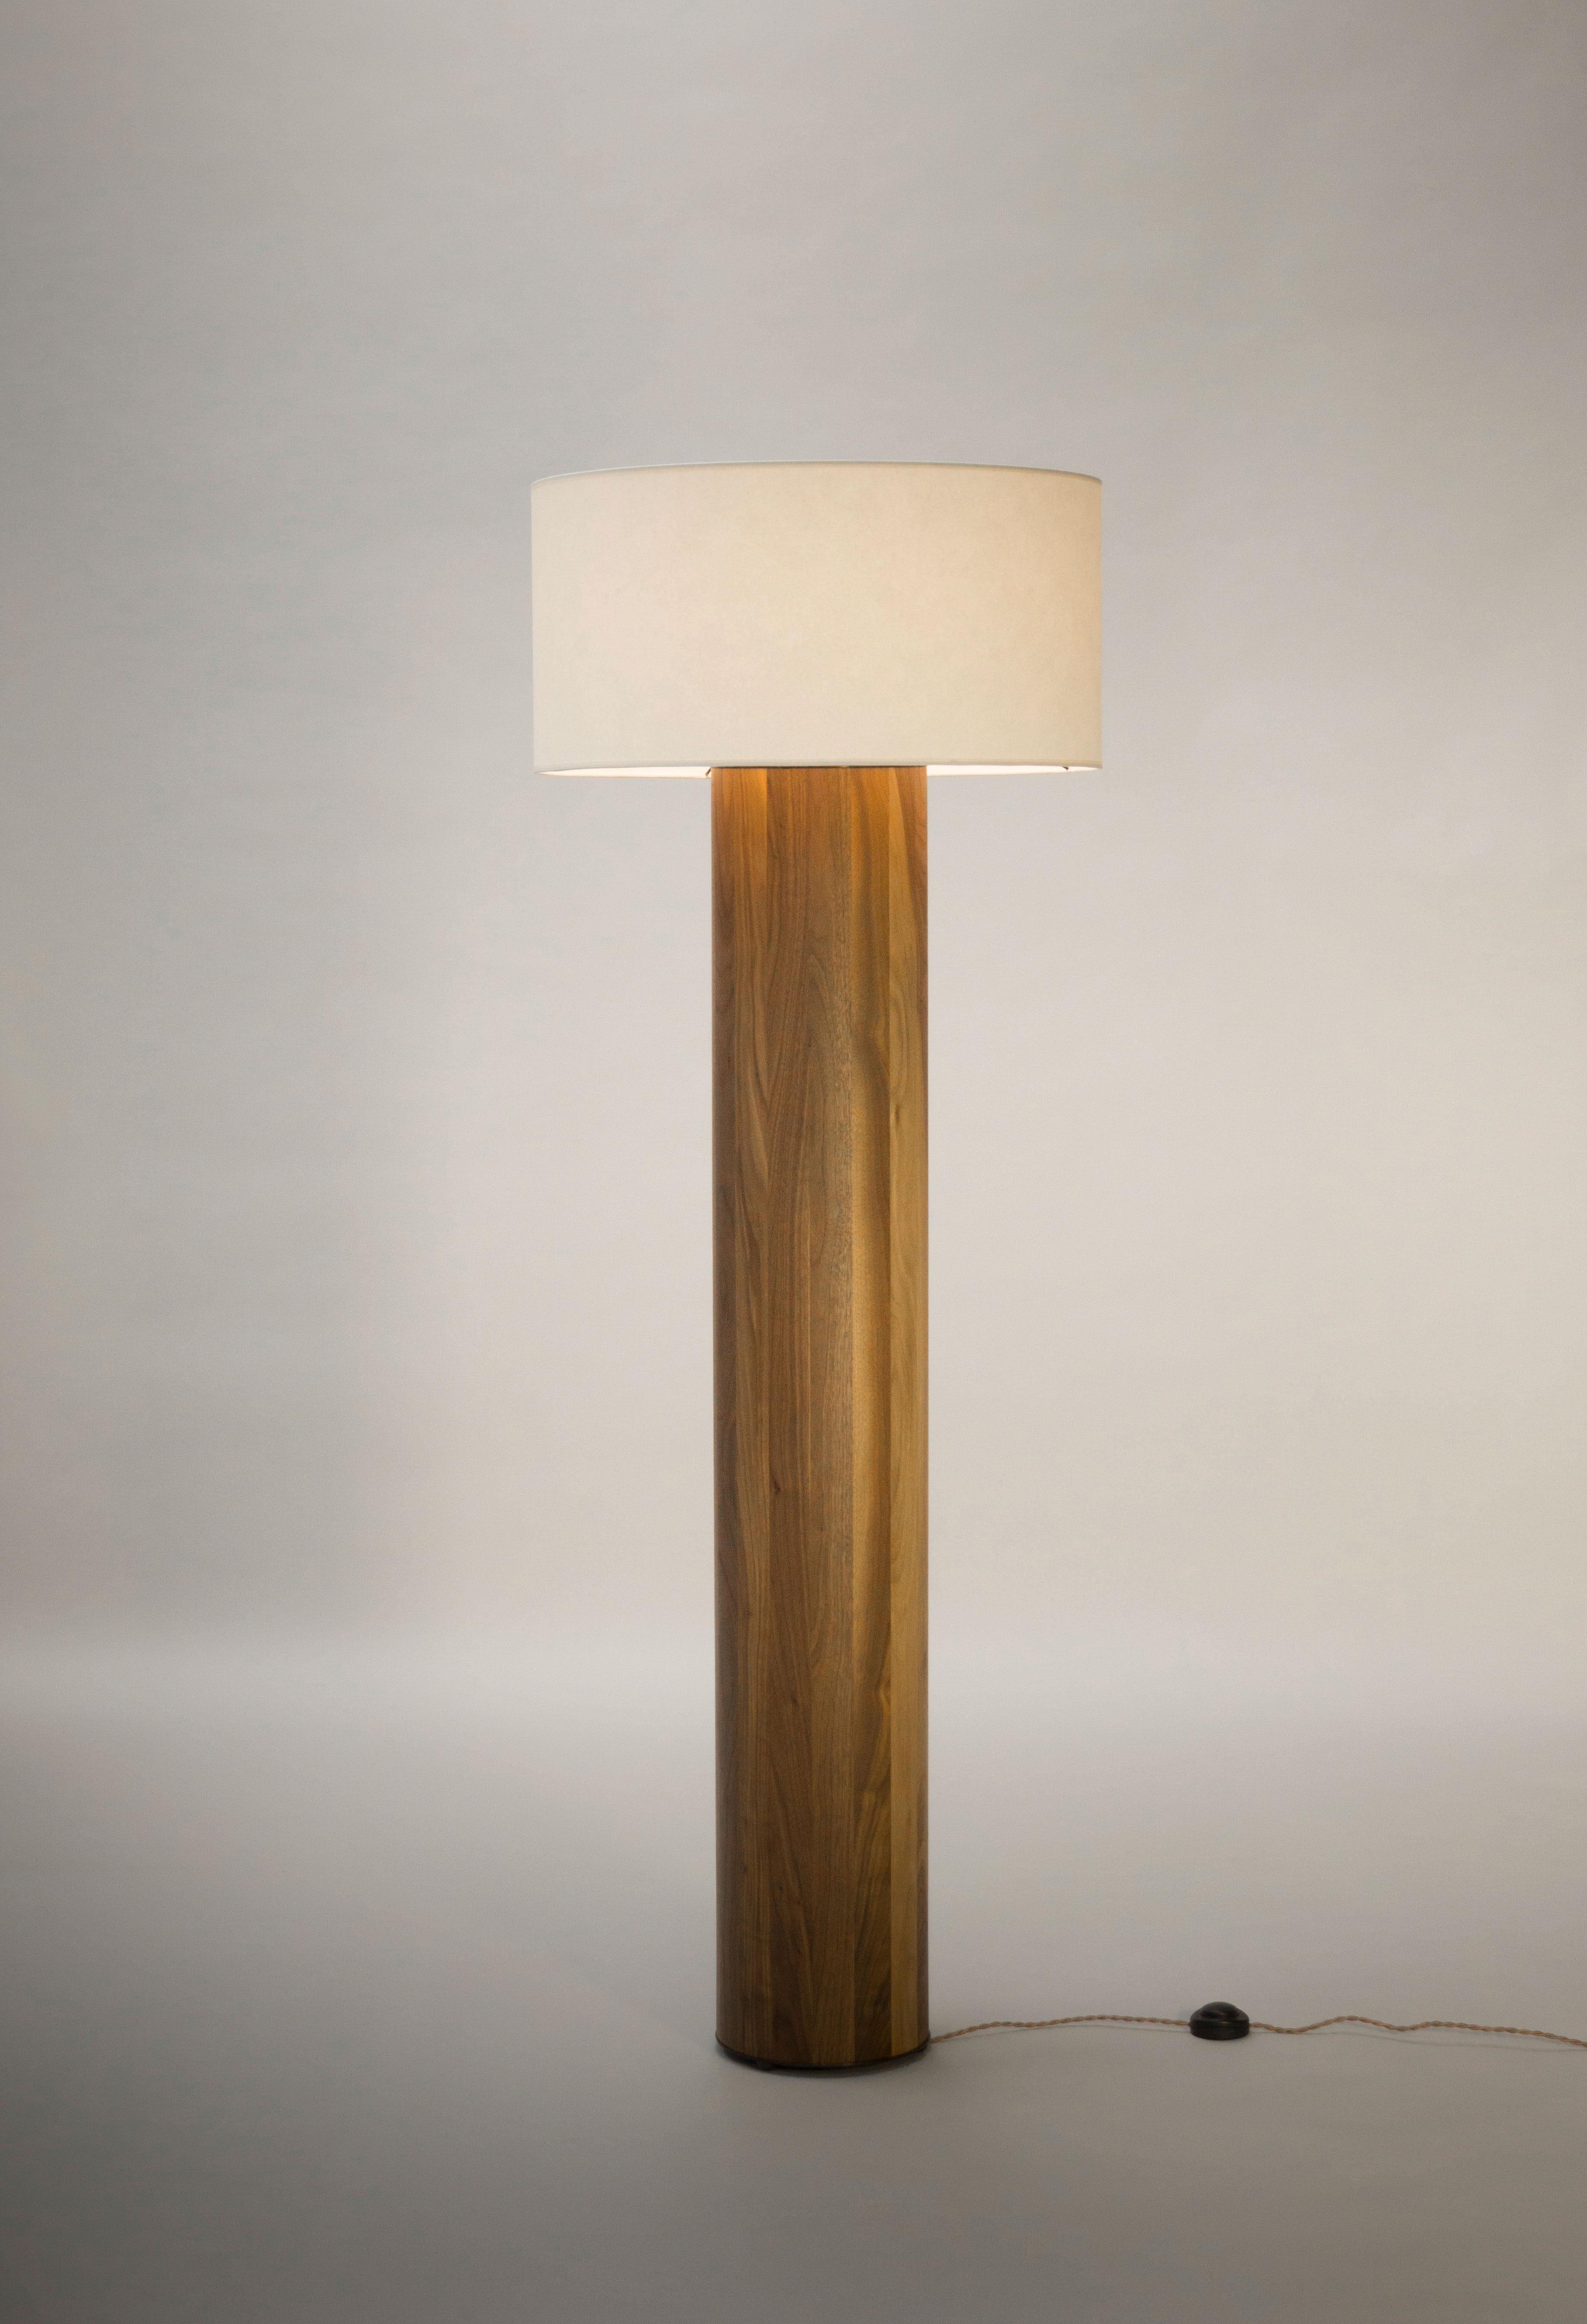 Élégant lampadaire intemporel en bois de noyer de Tinatin Kilaberidze, conçu exclusivement pour la galerie Valerie Goodman. Les dimensions de la base sont 55